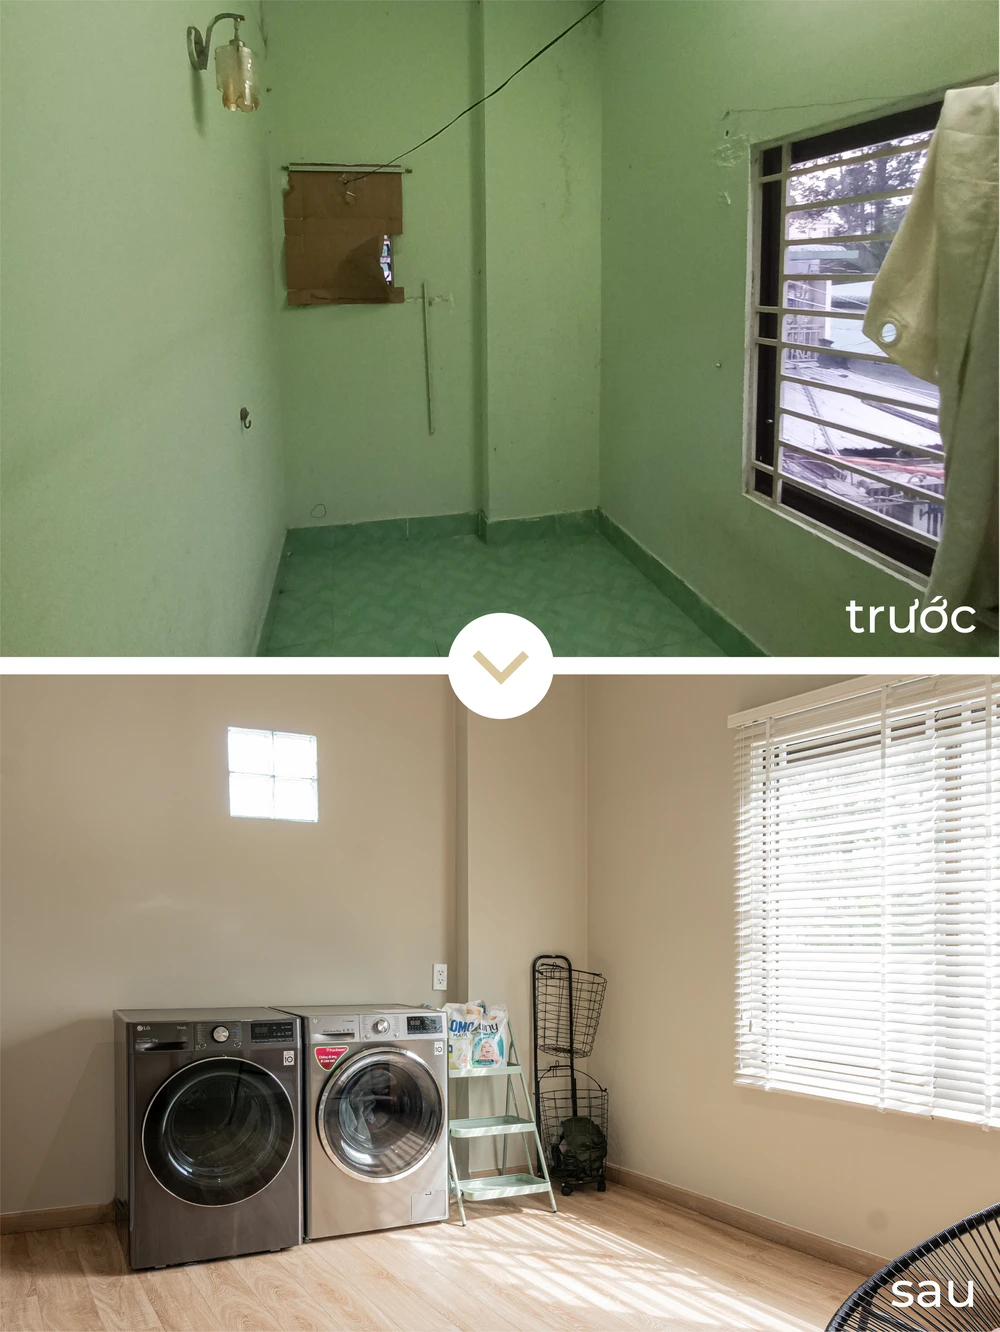 Tường của phòng ngủ nhỏ được đập bỏ để nới rộng không gian, tạo diện tích cho phòng giặt.